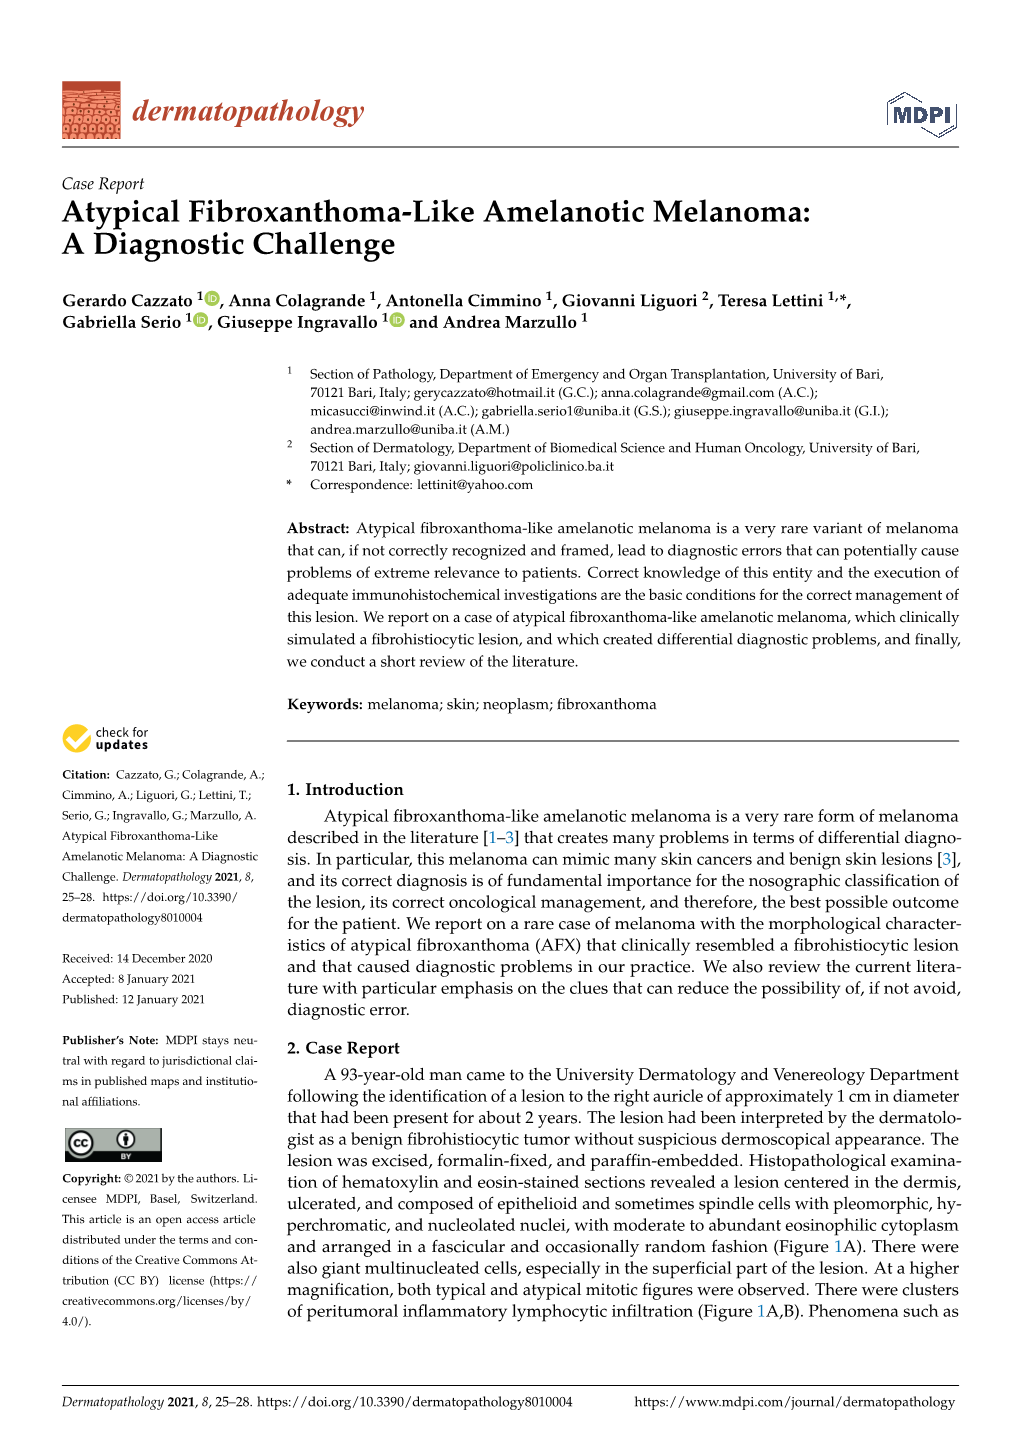 Atypical Fibroxanthoma-Like Amelanotic Melanoma: a Diagnostic Challenge